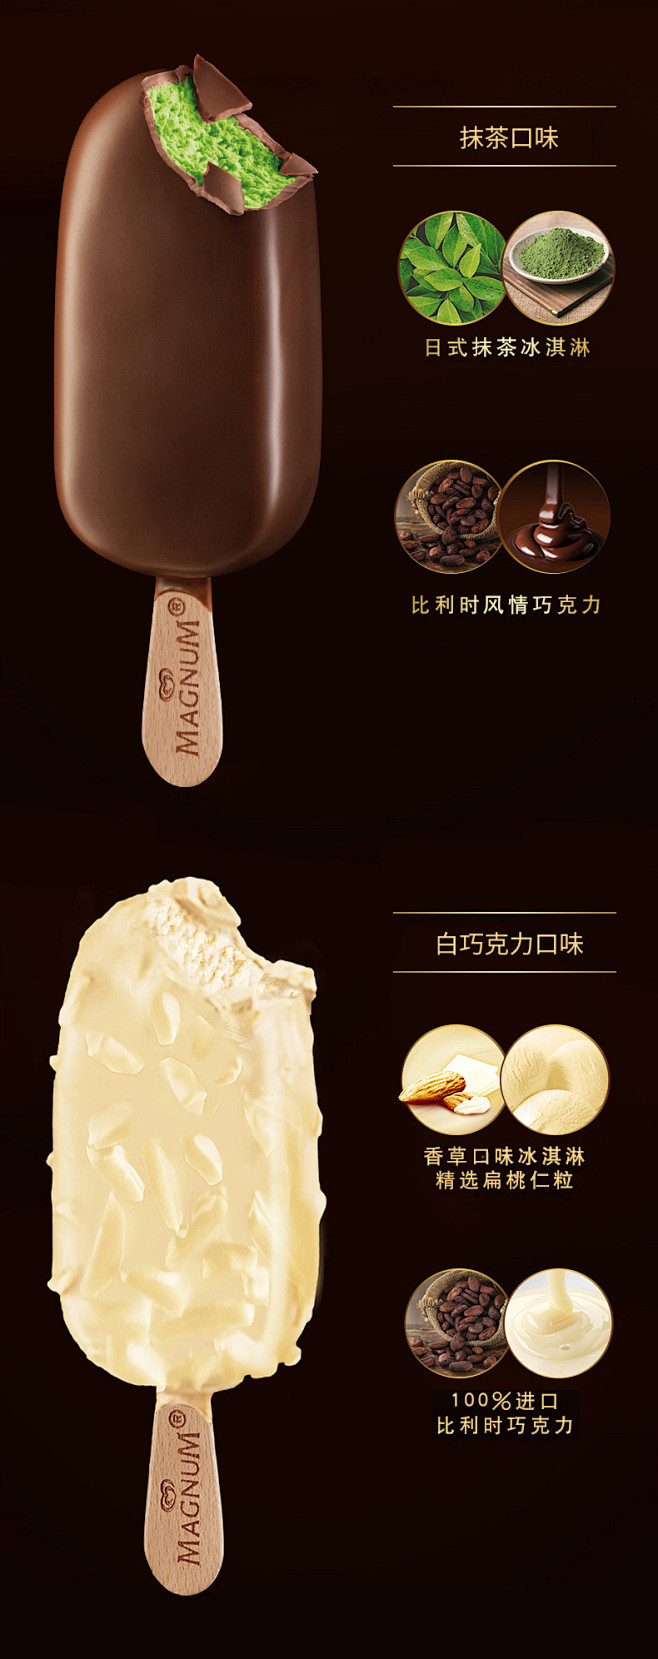 梦龙冰淇淋经典口味20支香草抹茶松露巧克...